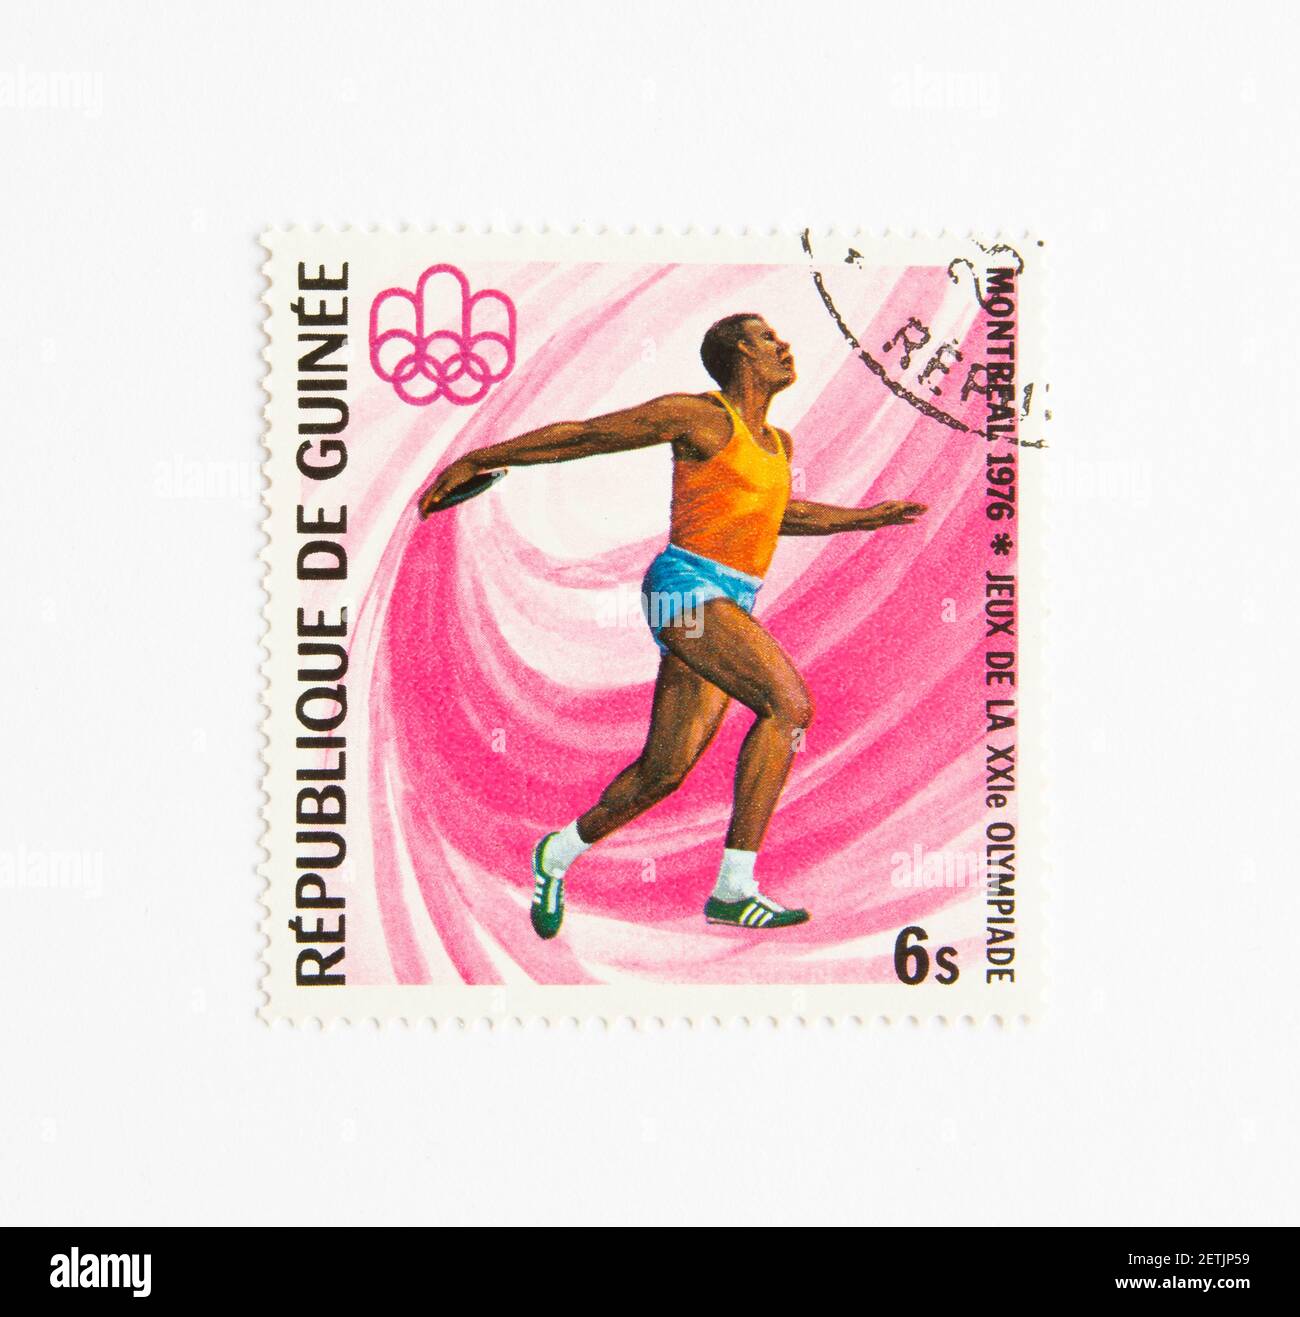 01.03.2021 Istanbul Türkei. Guinea Republik Briefmarke. Um 1976. Olympische Sommerspiele 1976 in Montreal. Diskus werfen Stockfoto